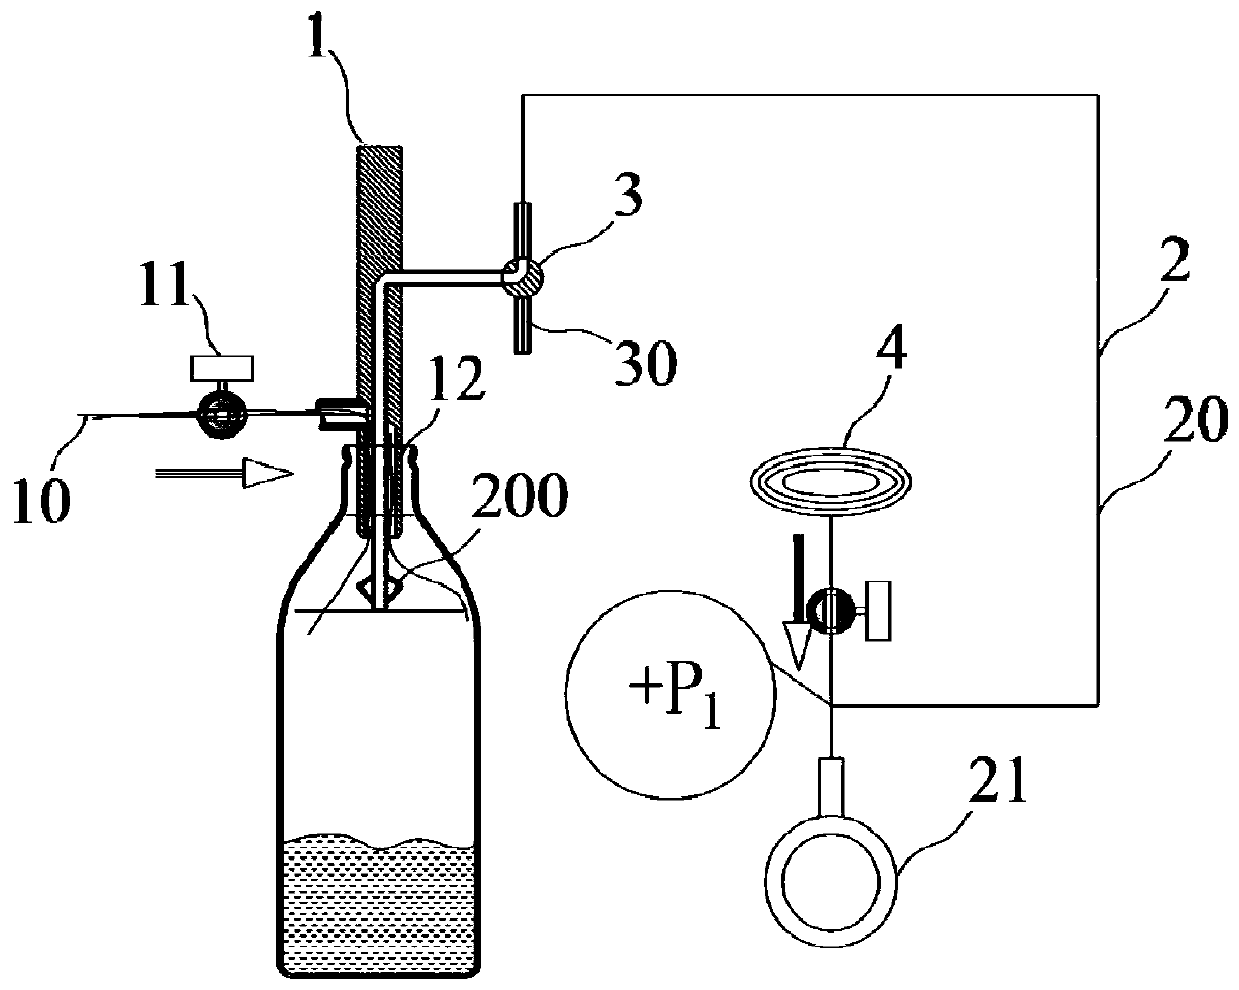 Positive pressure method non-contact liquid filling liquid level control method